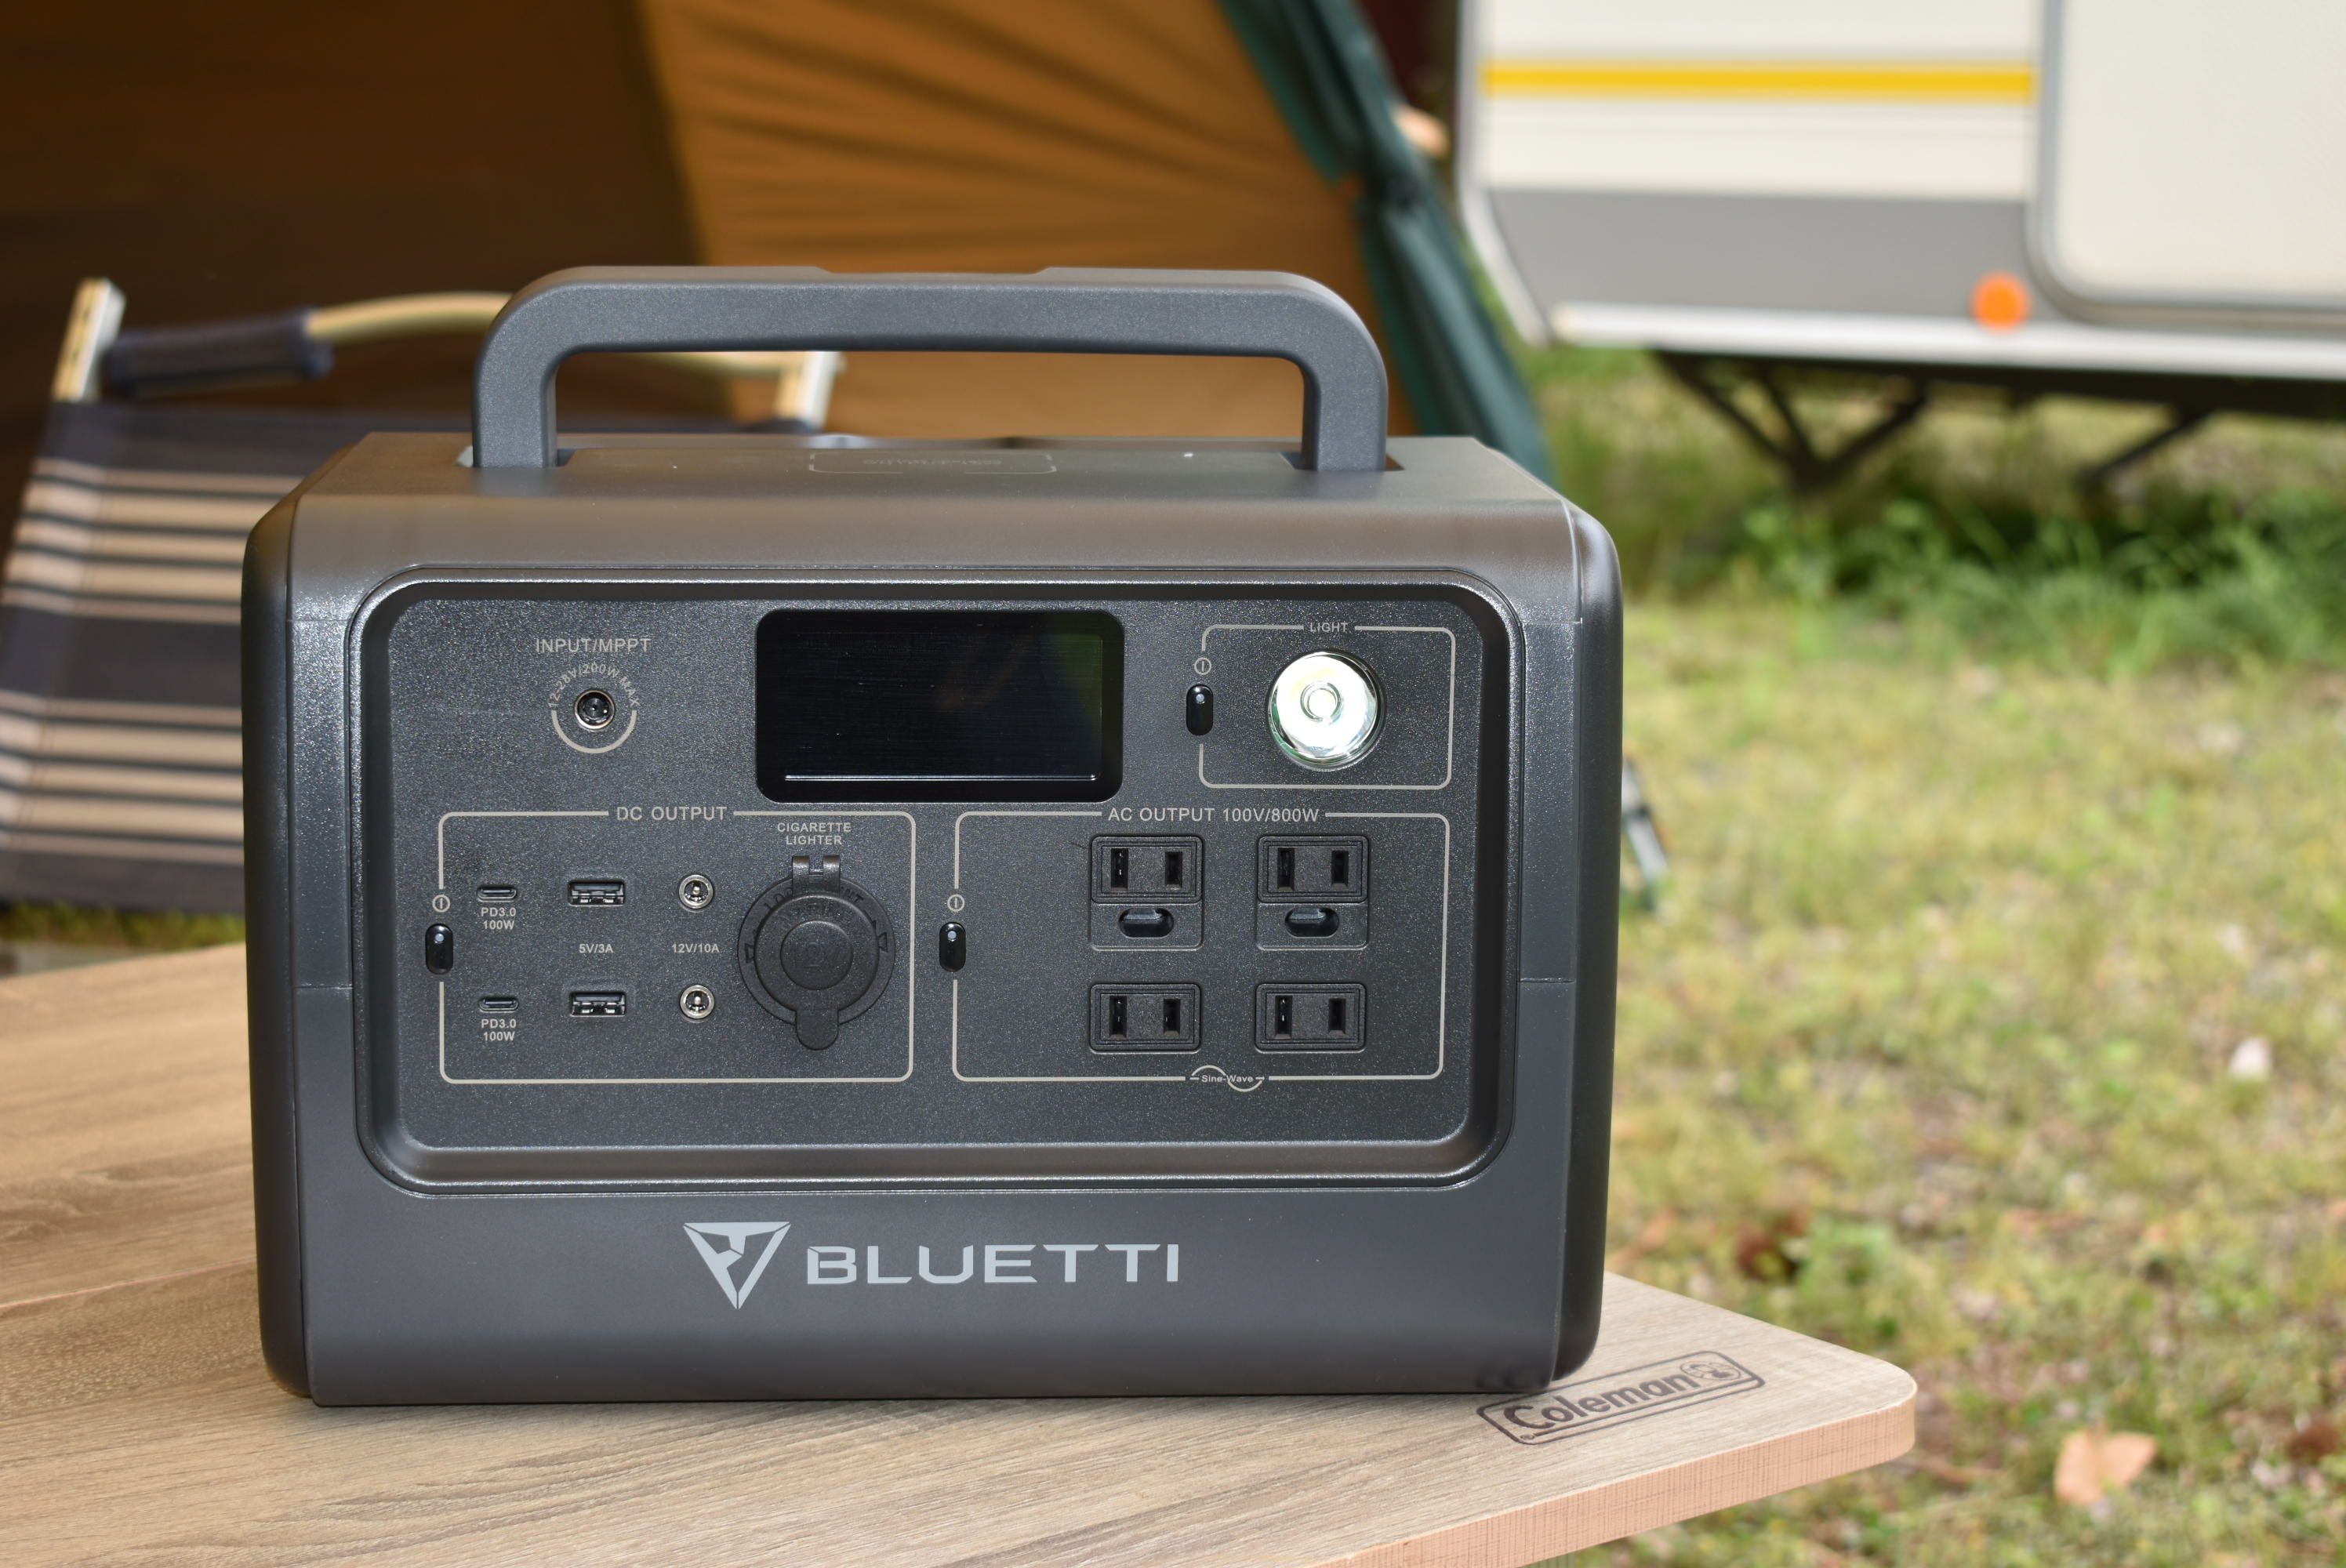 小型ポータブル電源BLUETTI(ブルーティ) EB70Sをキャンプや車中泊の